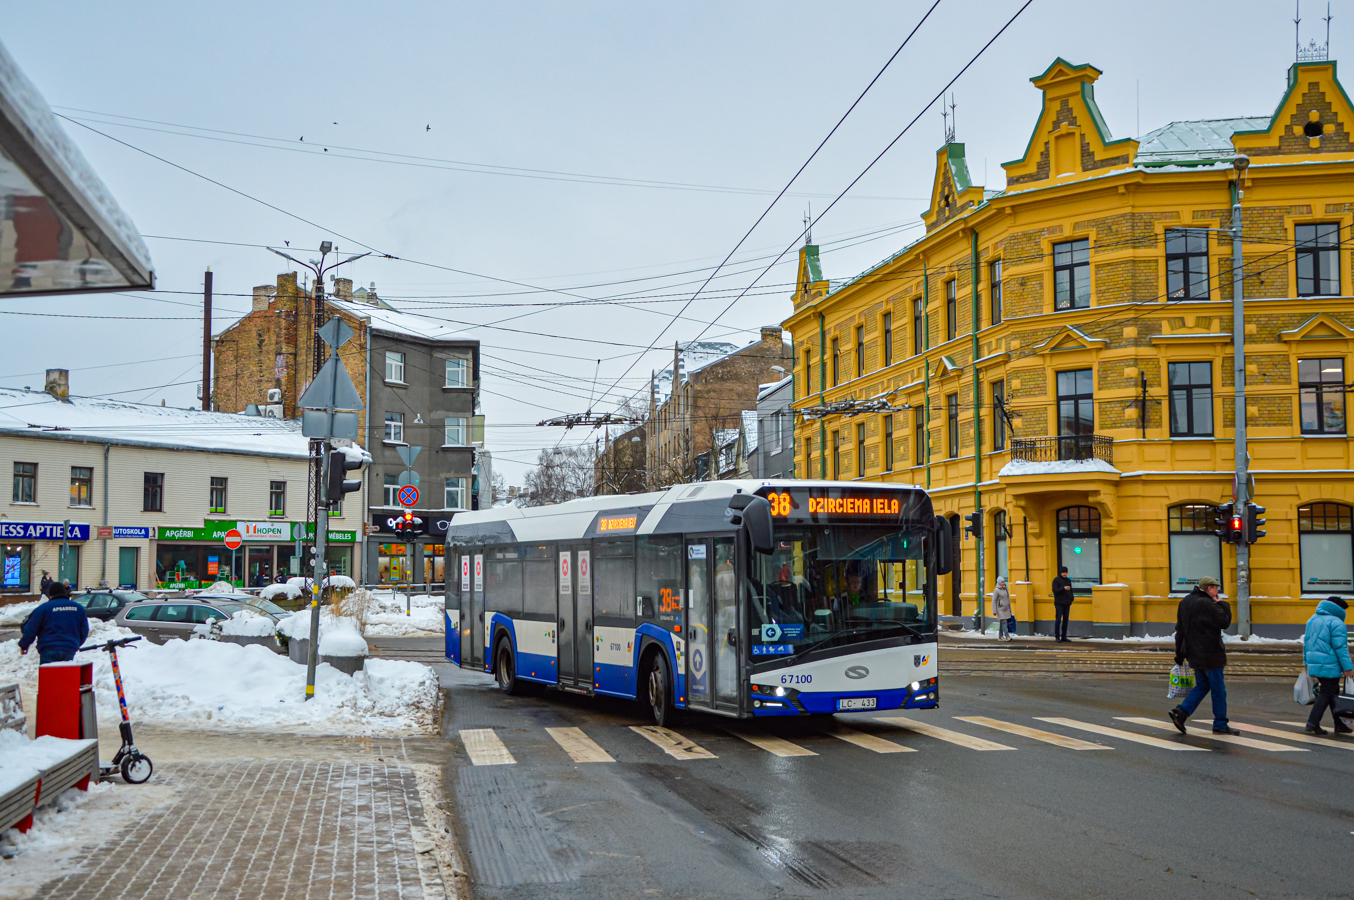 Riga, Solaris Urbino IV 12 # 67100